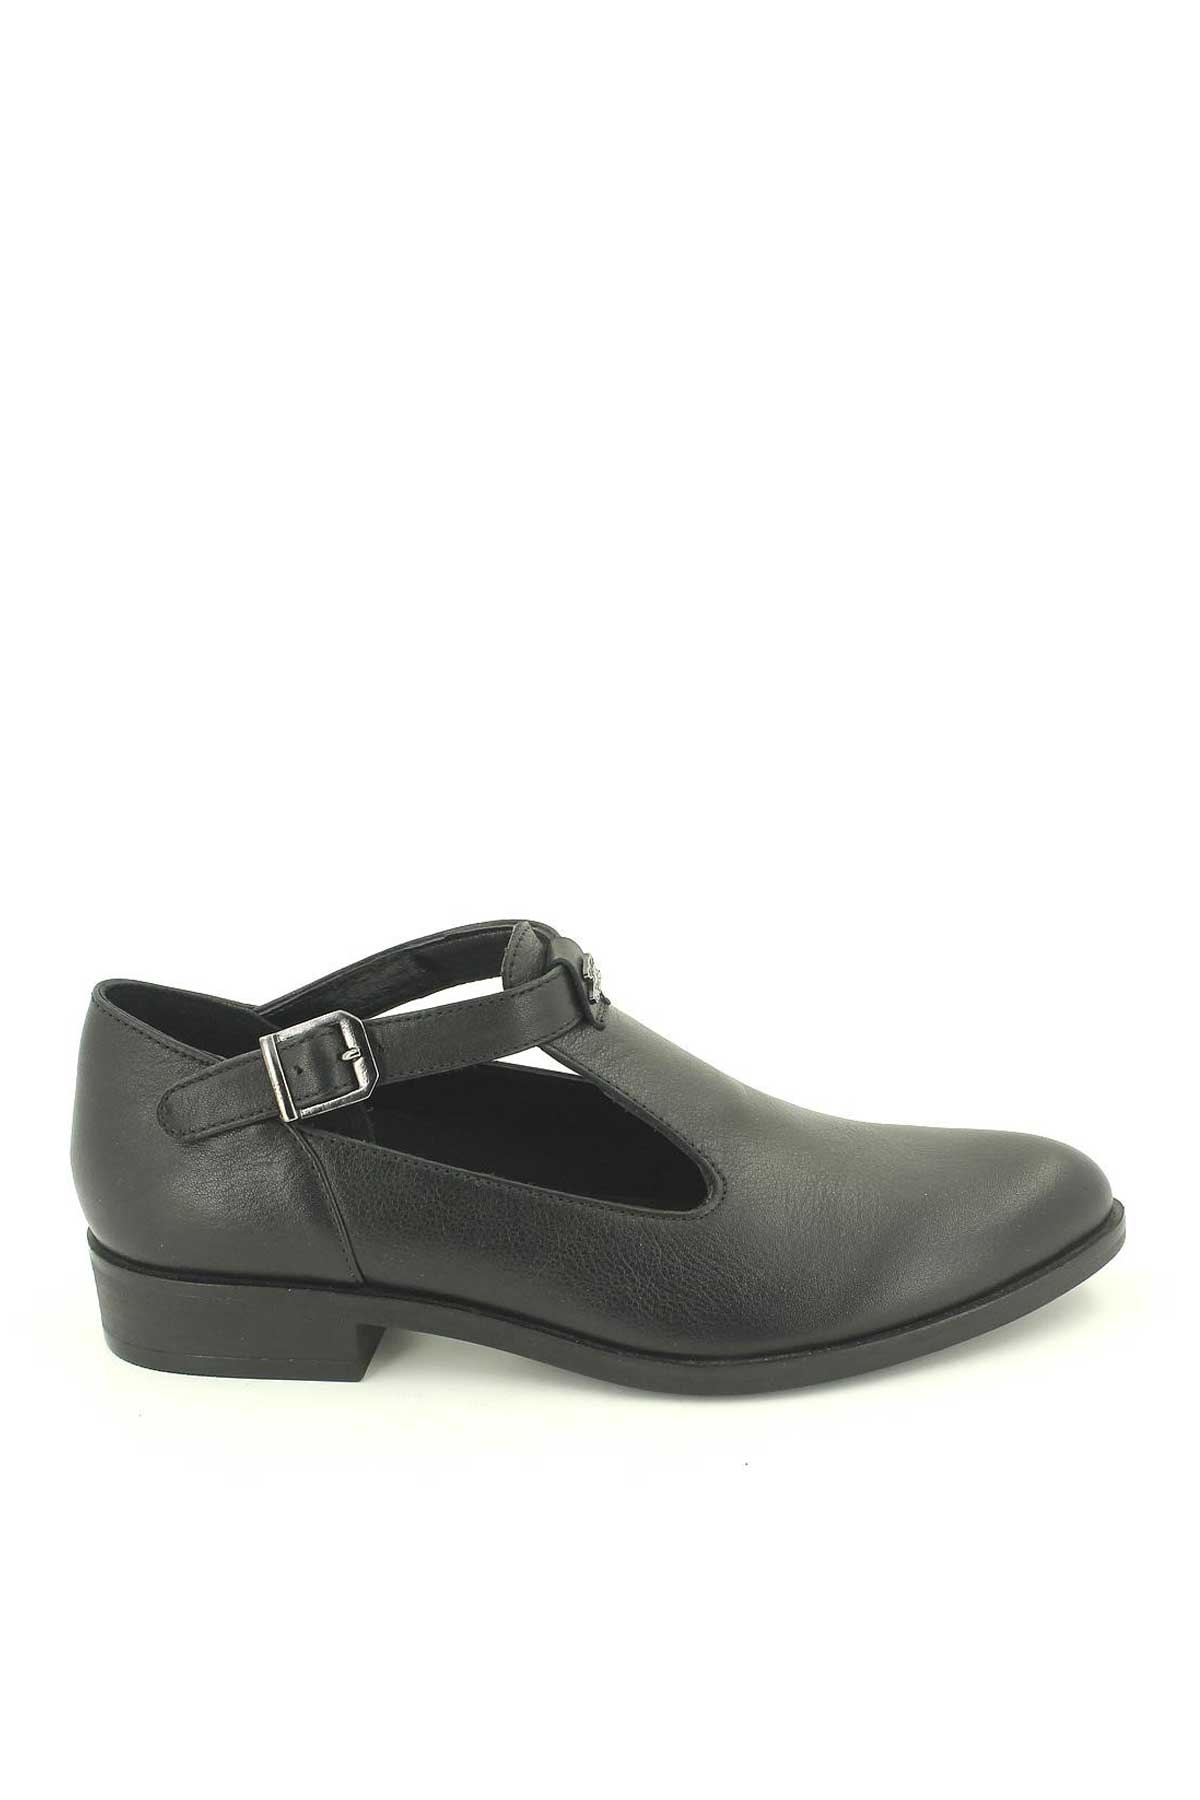 Kadın Deri Ayakkabı Siyah 145405K